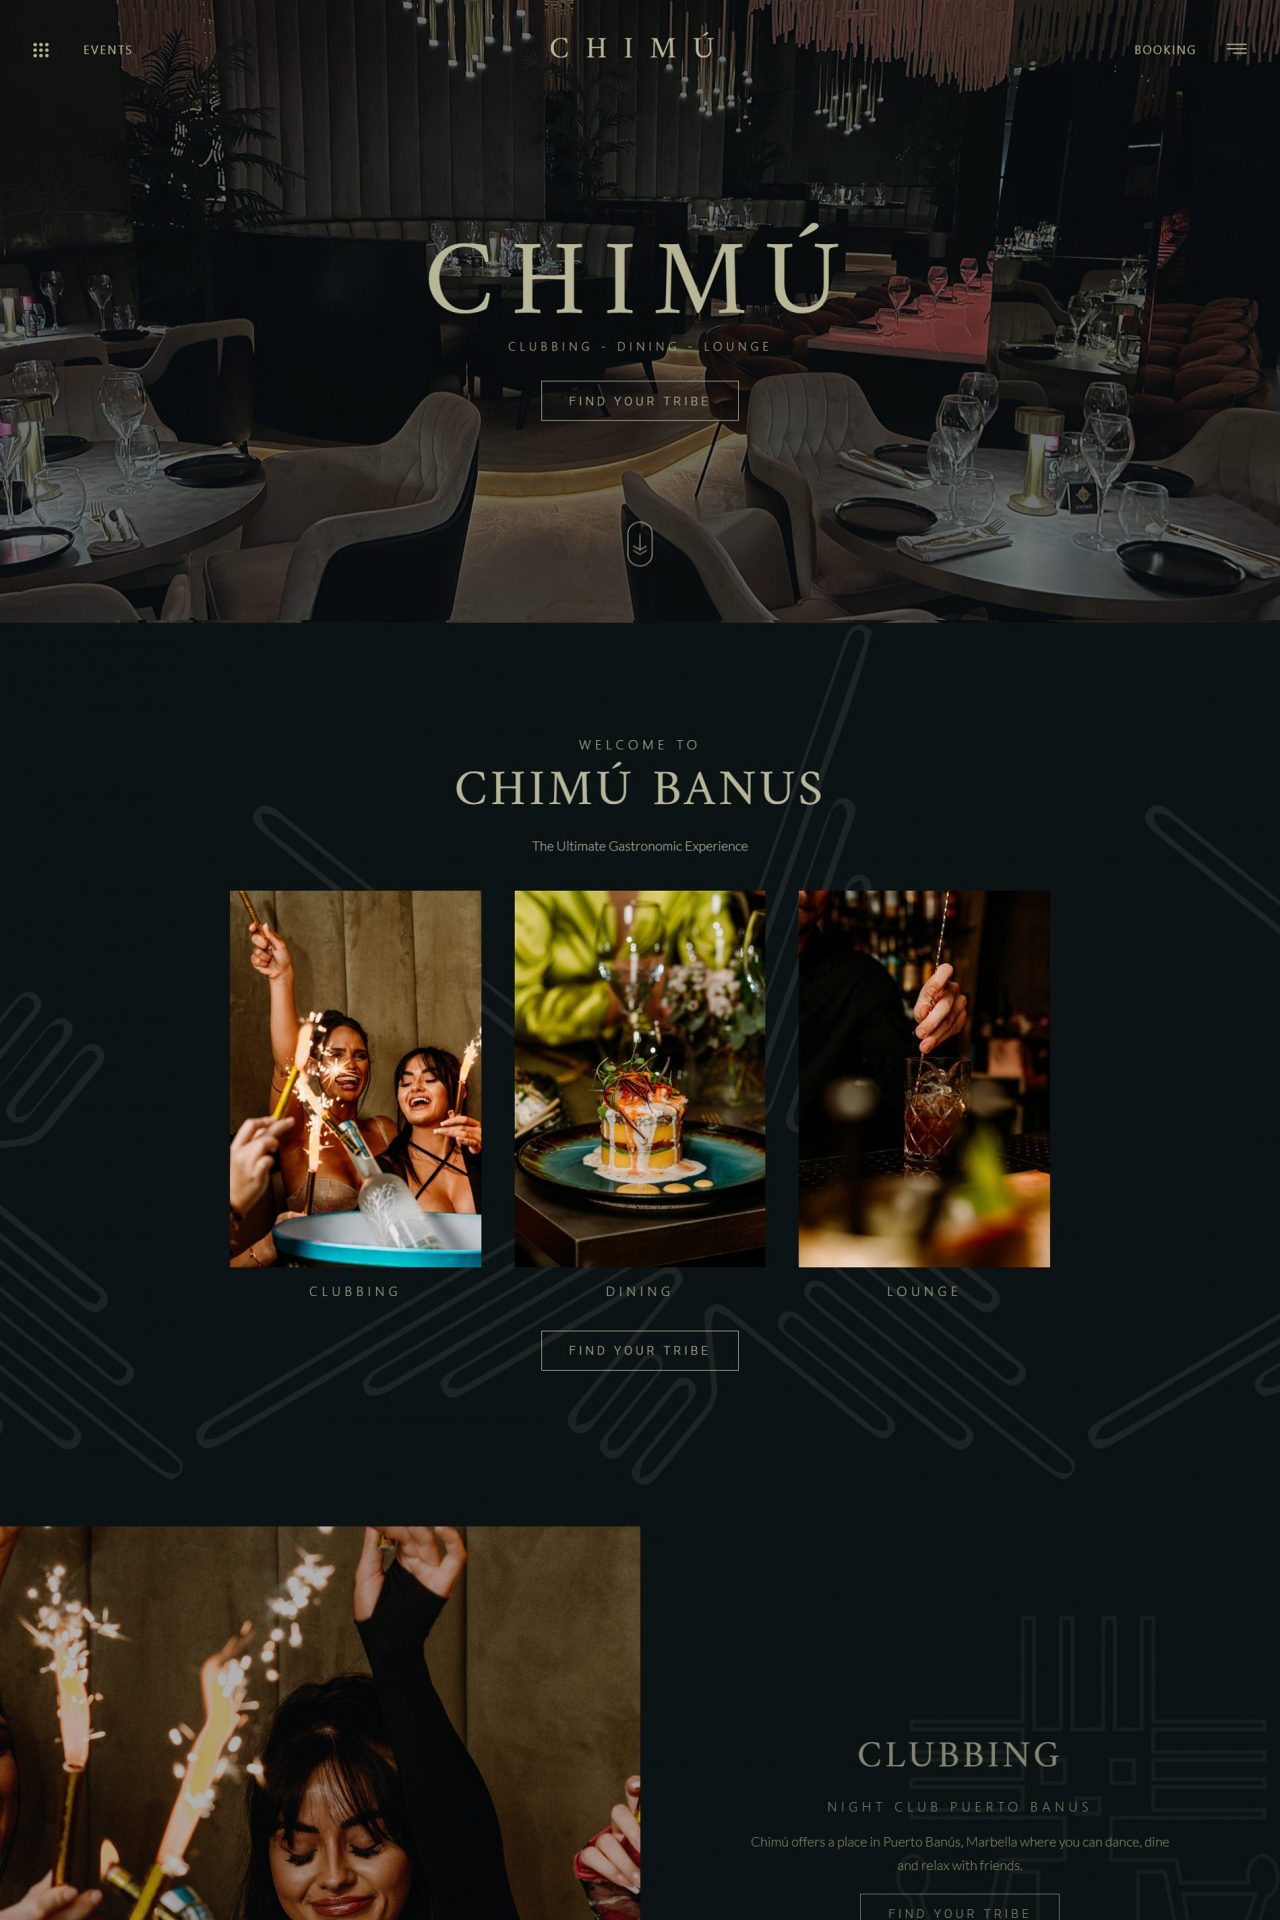 Chimu Puerto Banus - Club, Lounge, Restaurant Website Design